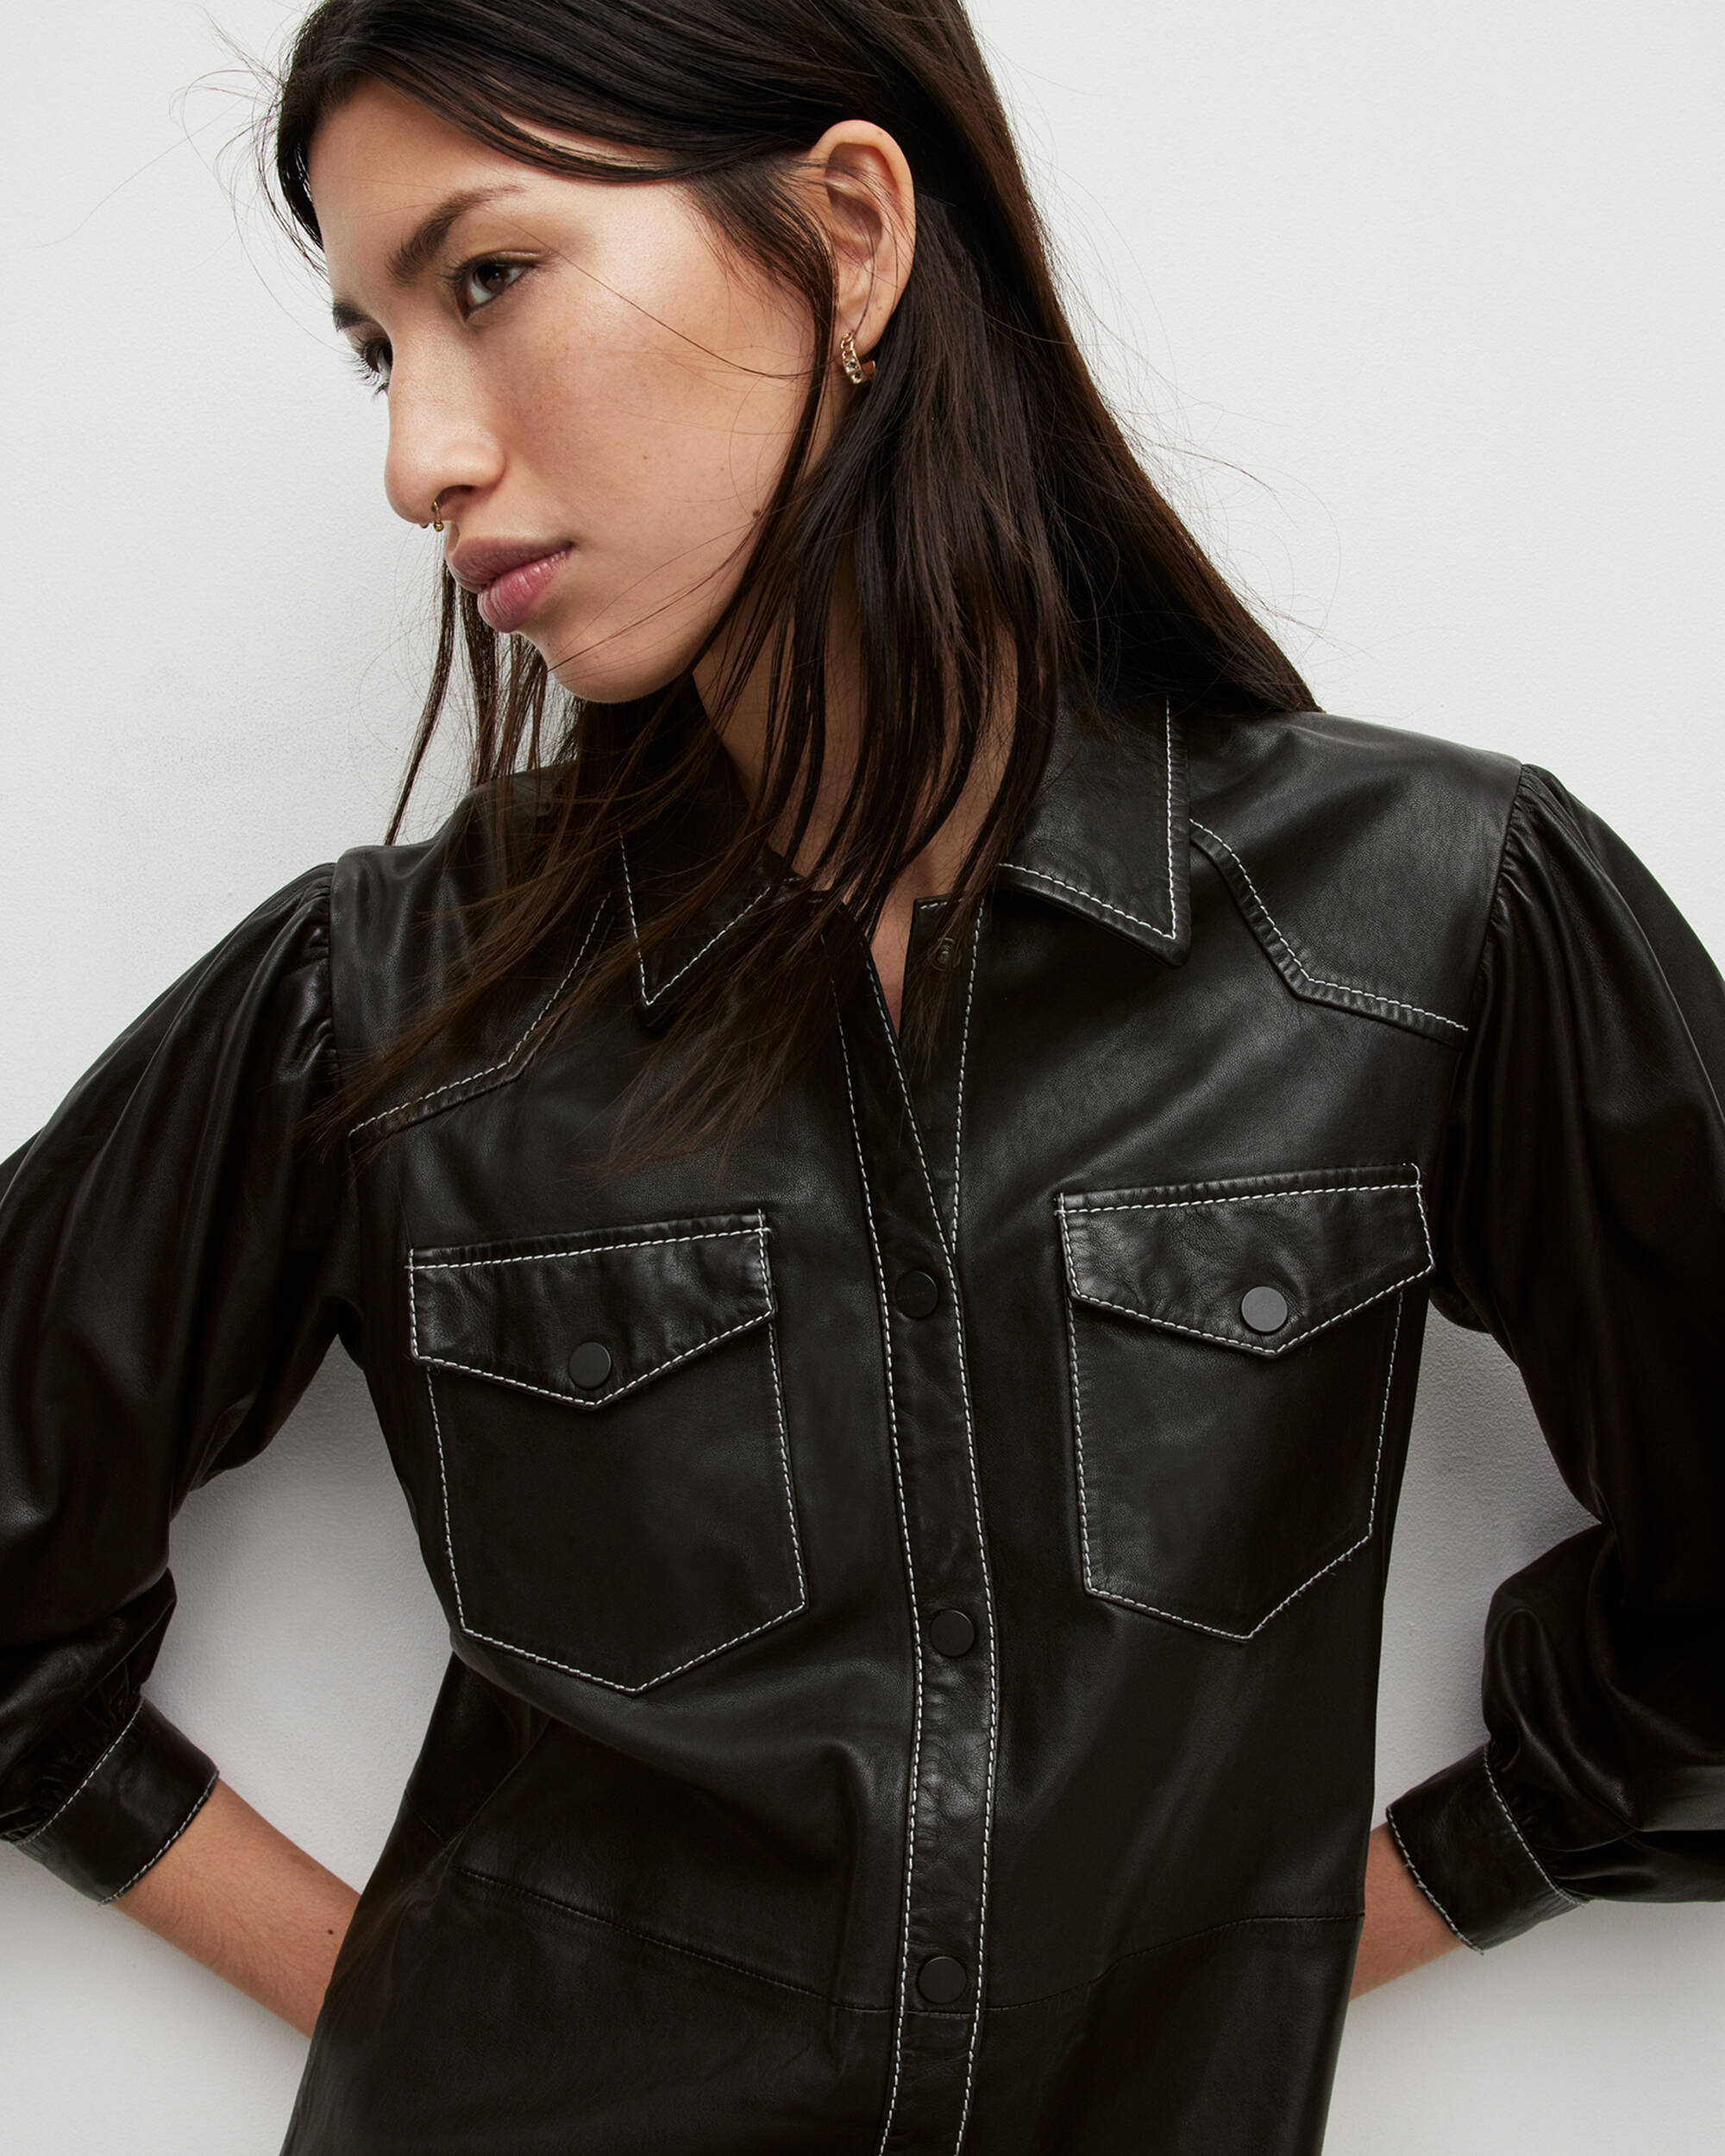 Ava Leather Shirt Midi Dress  large image number 2